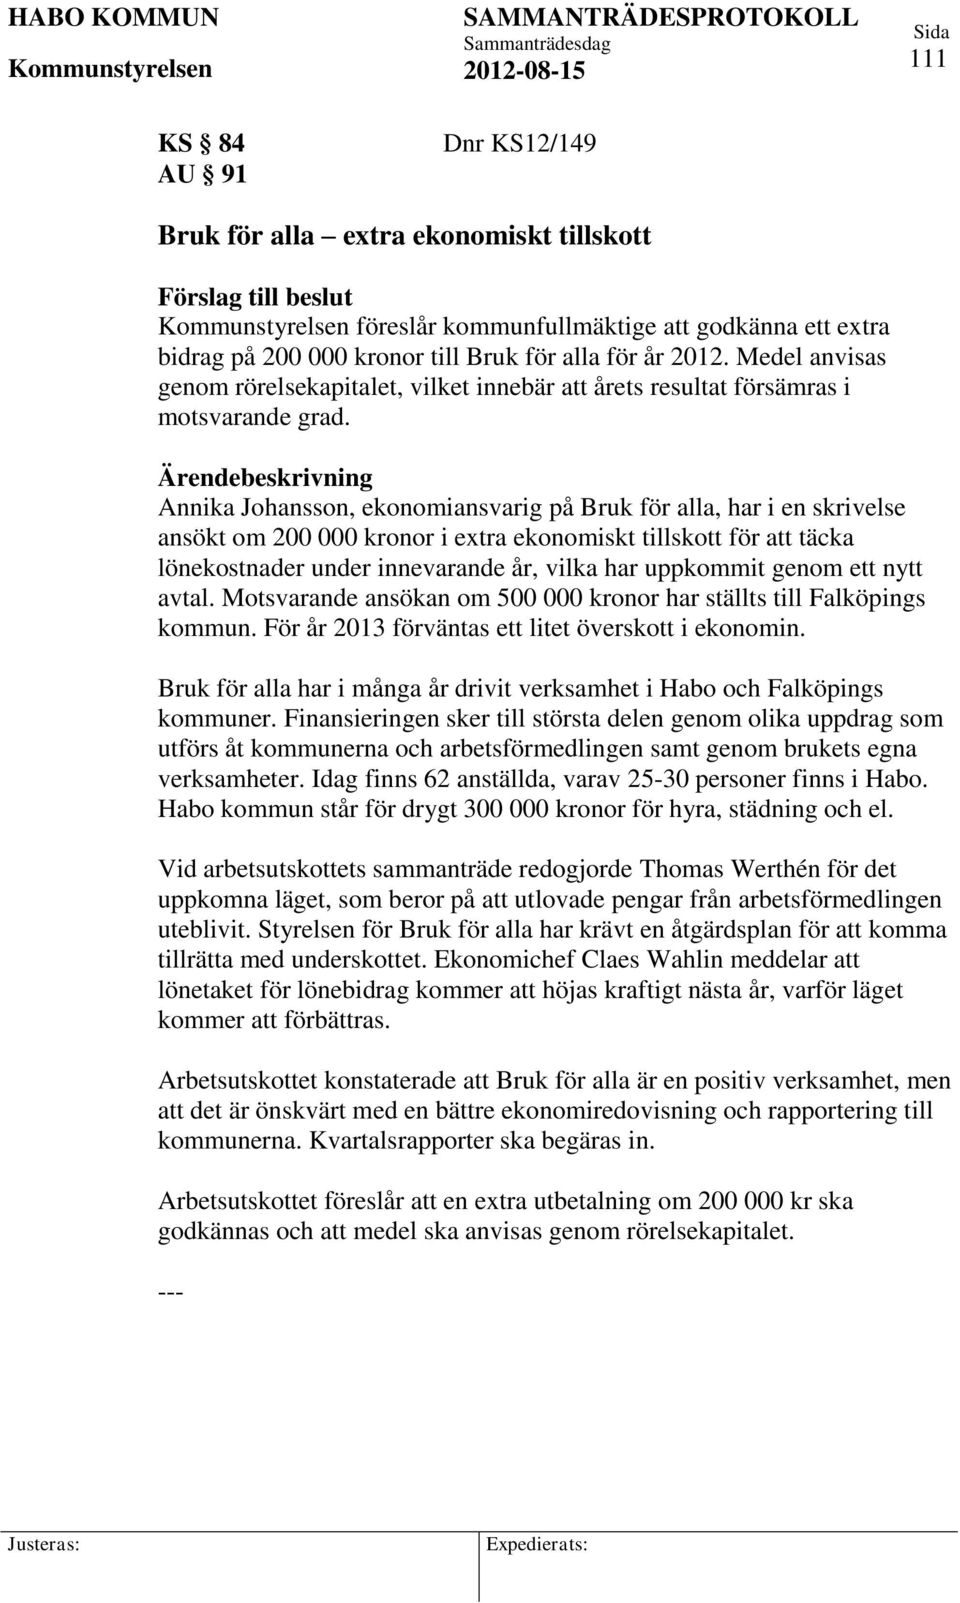 Annika Johansson, ekonomiansvarig på Bruk för alla, har i en skrivelse ansökt om 200 000 kronor i extra ekonomiskt tillskott för att täcka lönekostnader under innevarande år, vilka har uppkommit